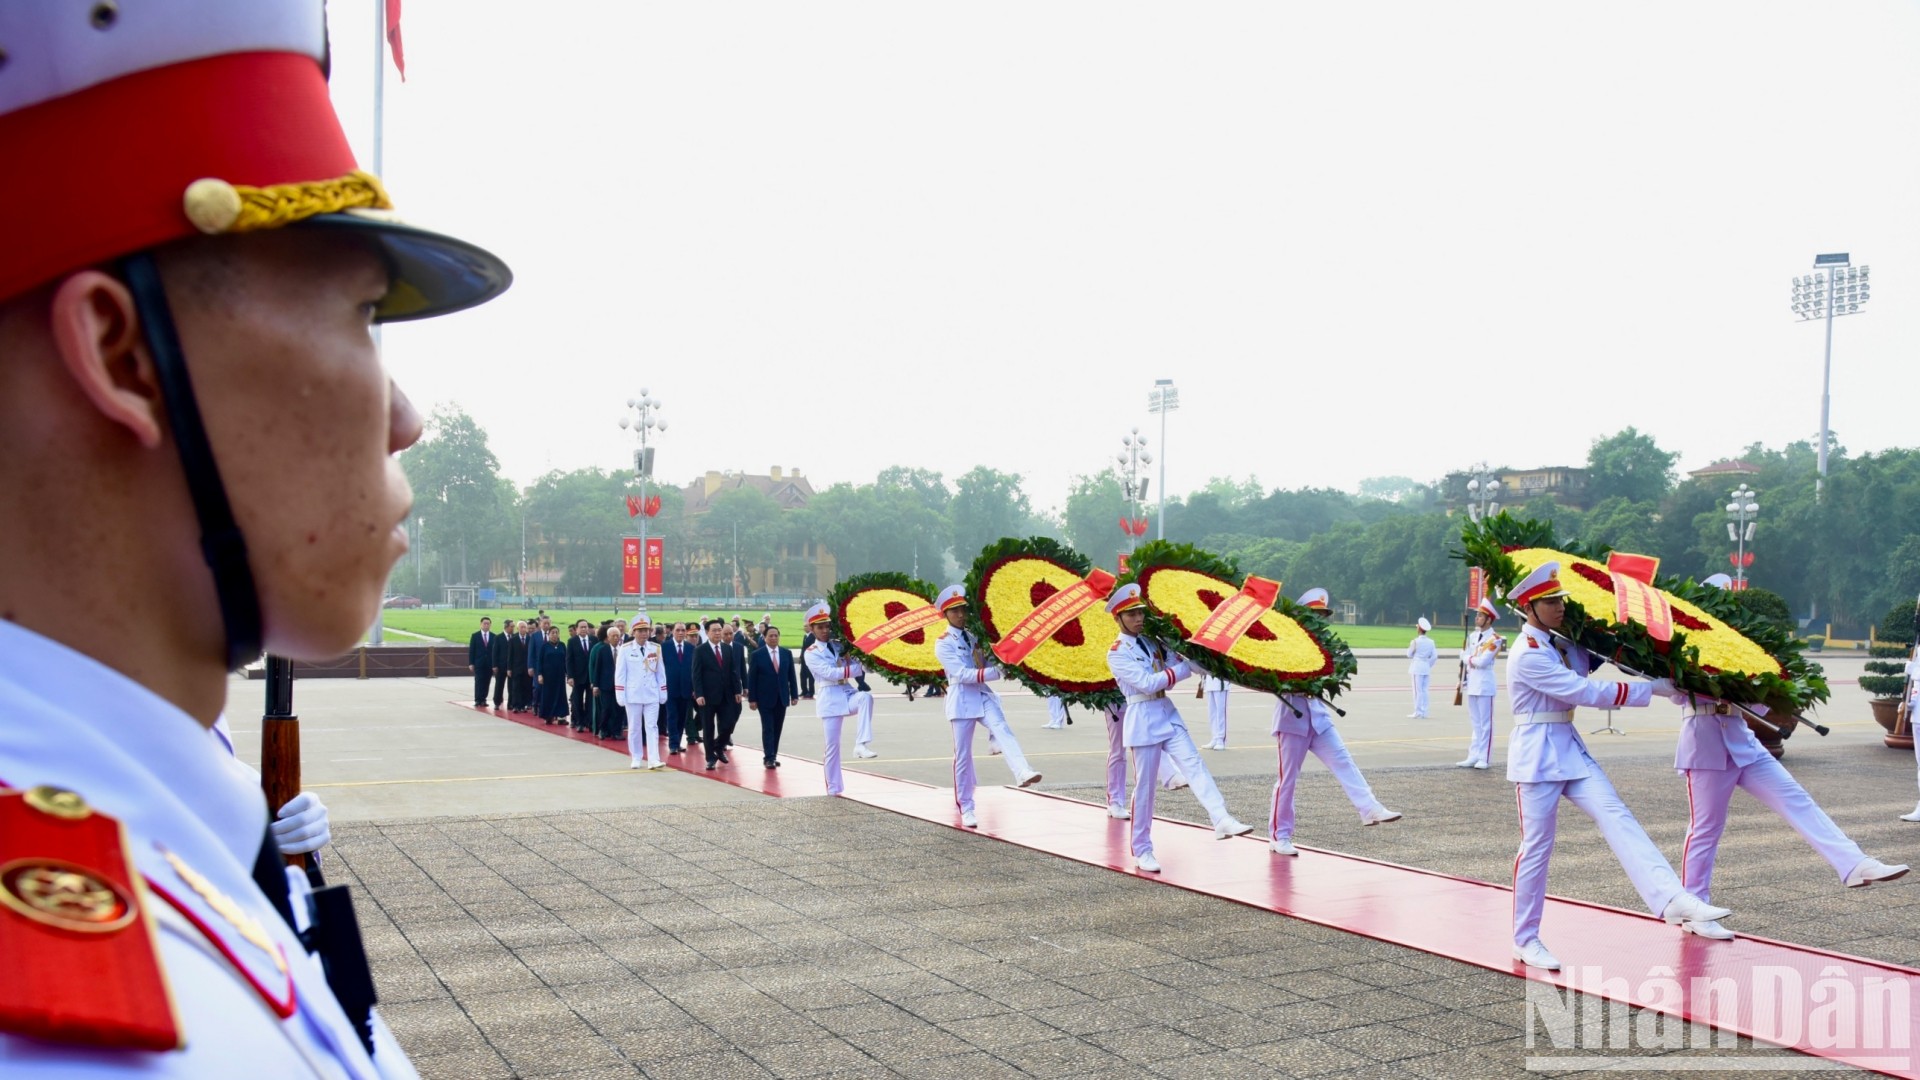 Các đồng chí lãnh đạo, nguyên lãnh đạo Đảng, Nhà nước vào Lăng viếng Chủ tịch Hồ Chí Minh, vòng hoa của đoàn mang dòng chữ “Đời đời nhớ ơn Chủ tịch Hồ Chí Minh vĩ đại”.